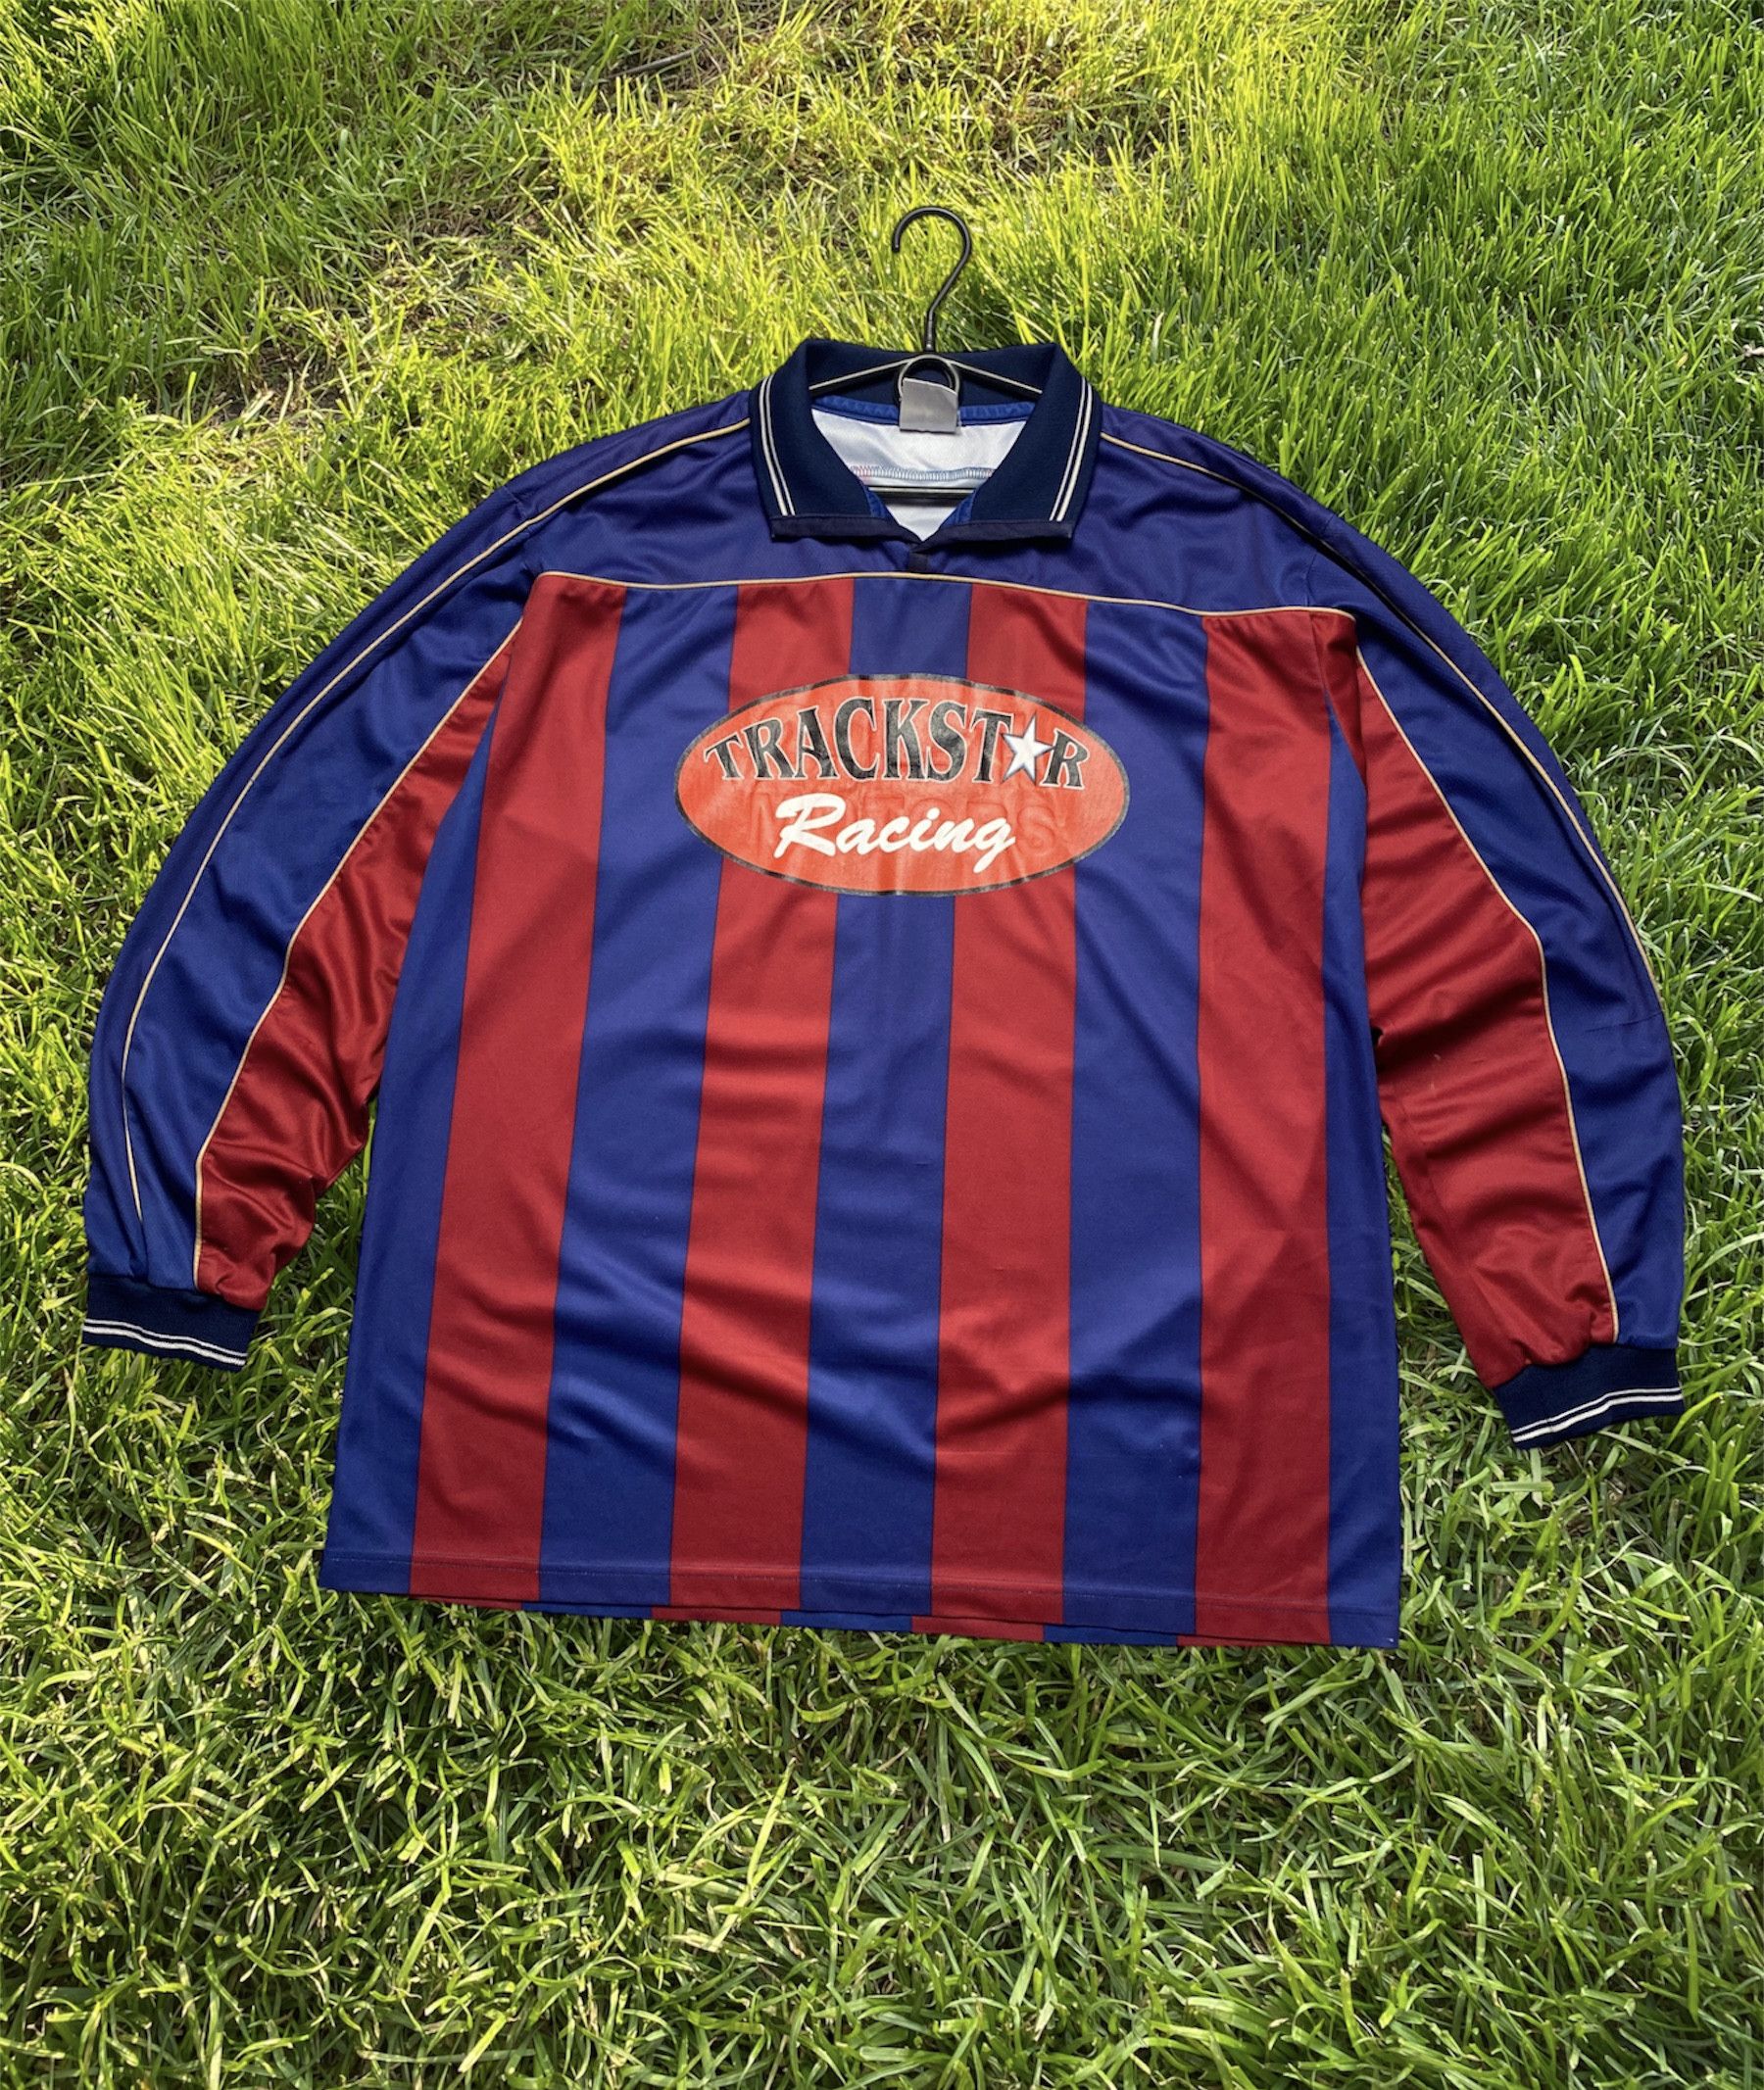 Soccer Jersey Vintage Longsleeve Racing stripes T logo number